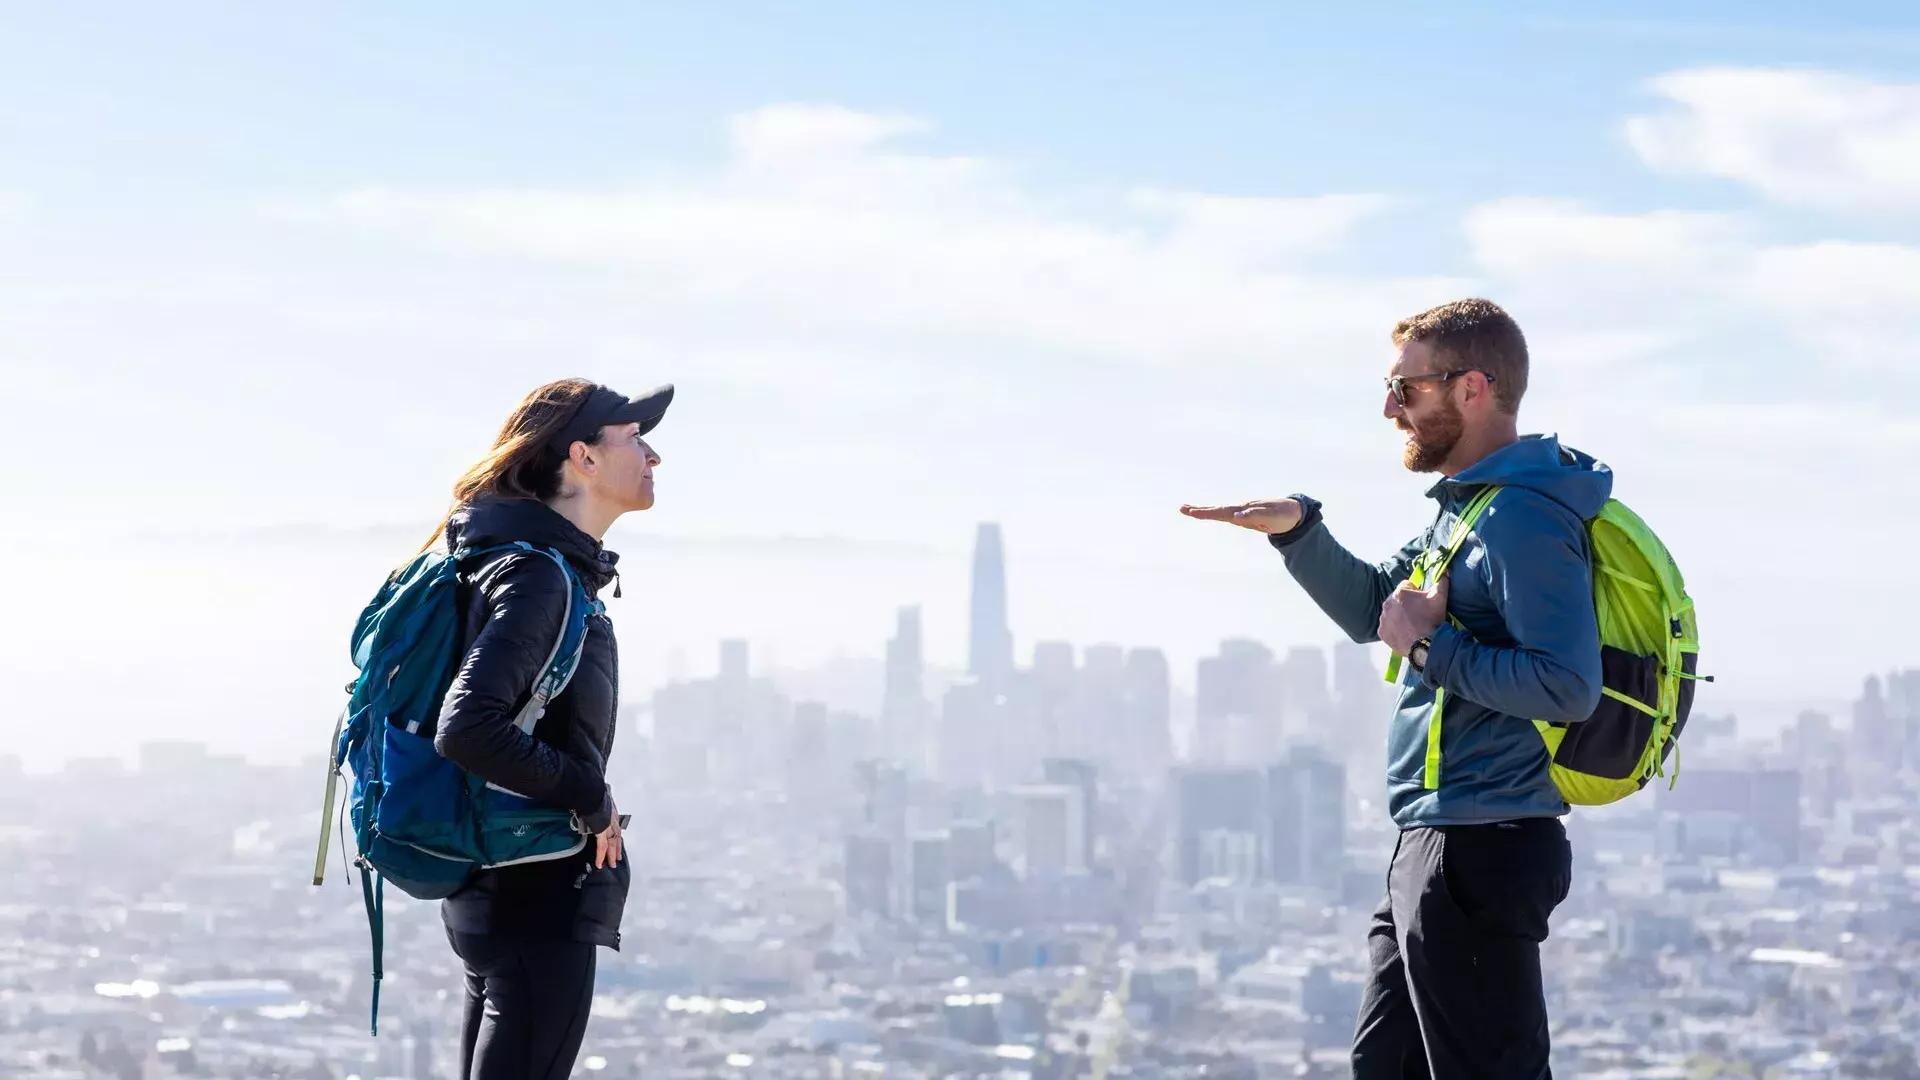 Gli escursionisti chiacchierano con lo skyline di San Francisco in lontananza